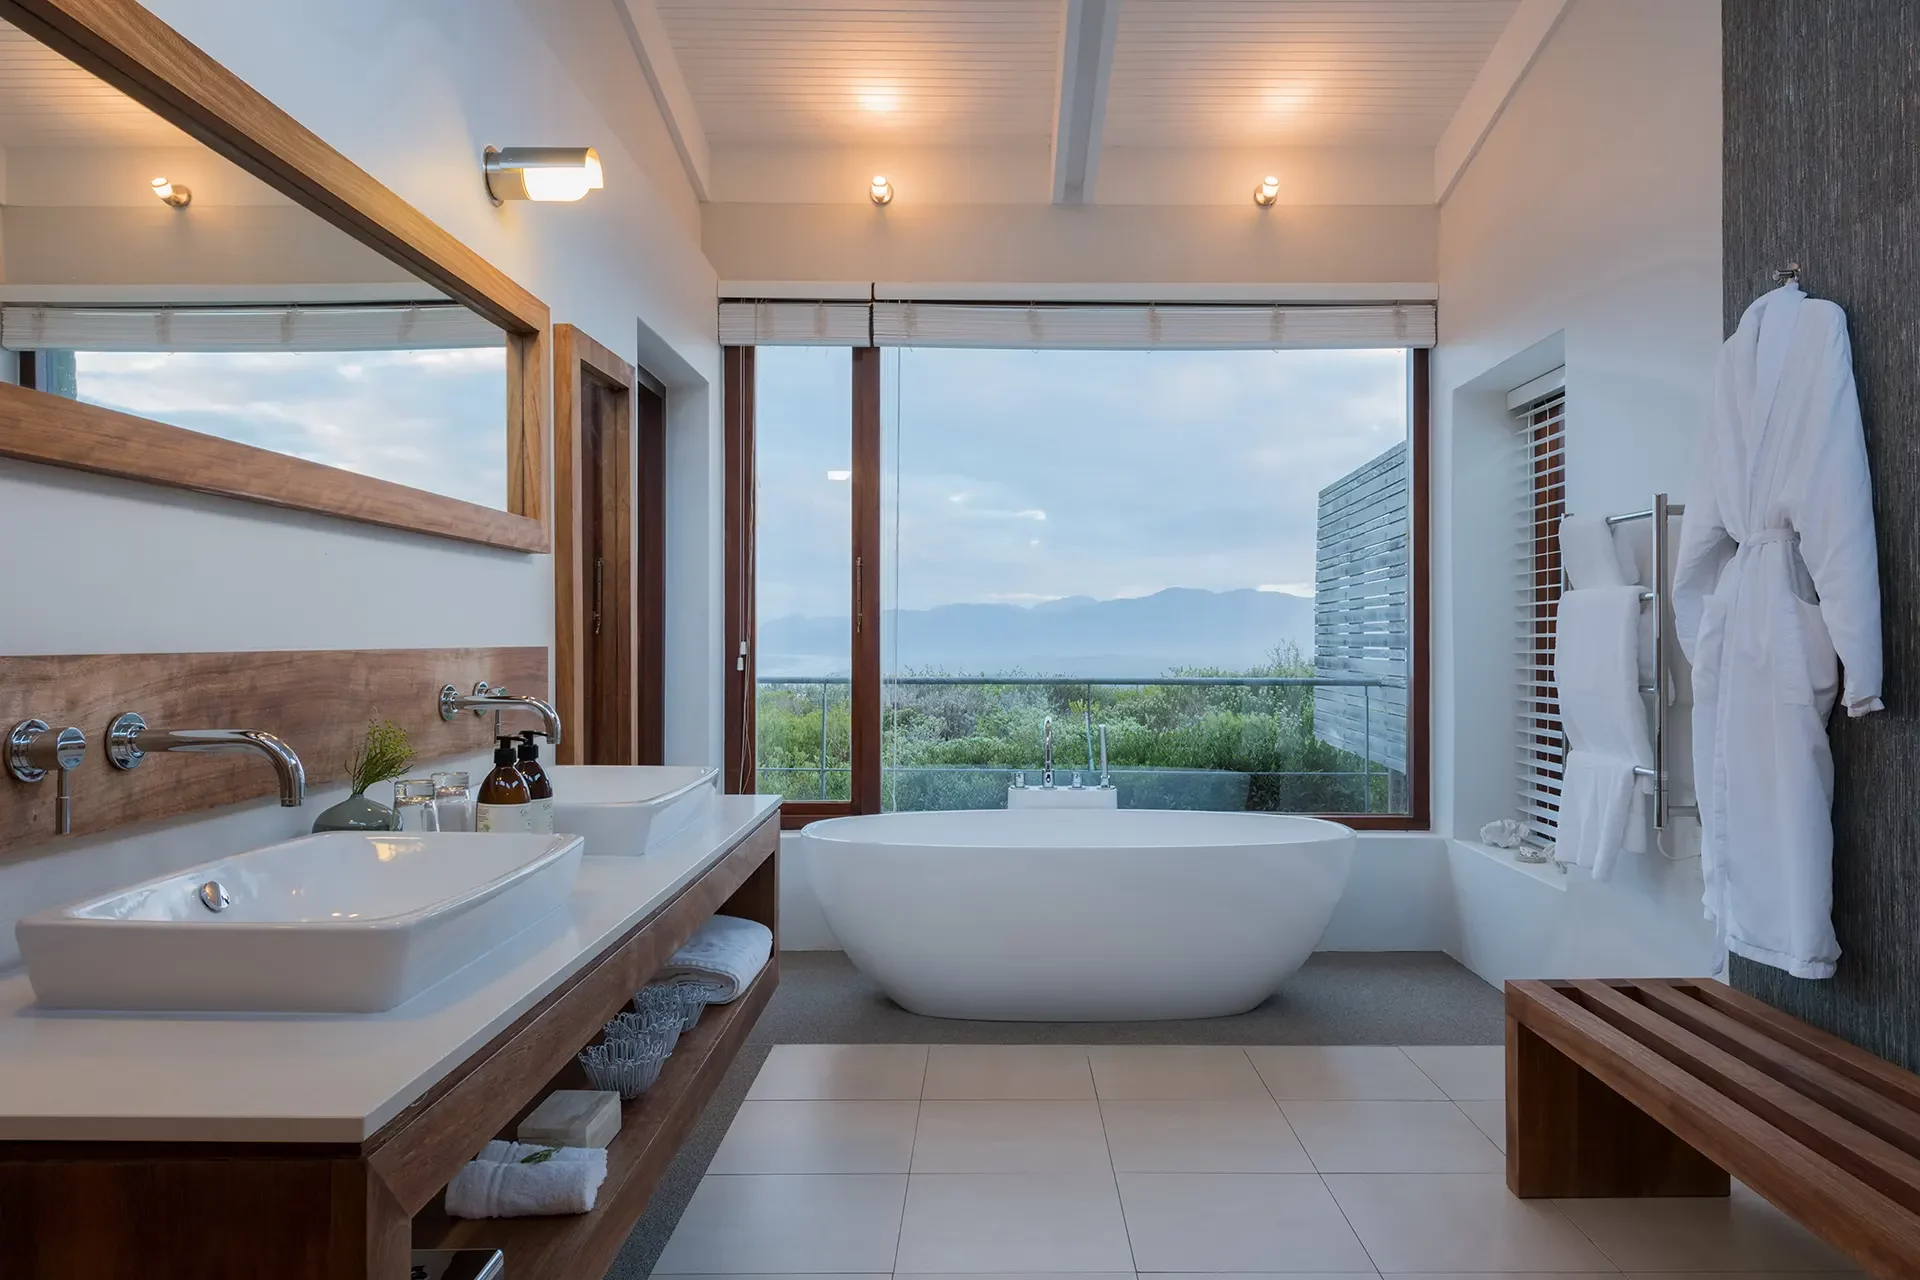 Freistehende Badewanne vor Panoramafenster